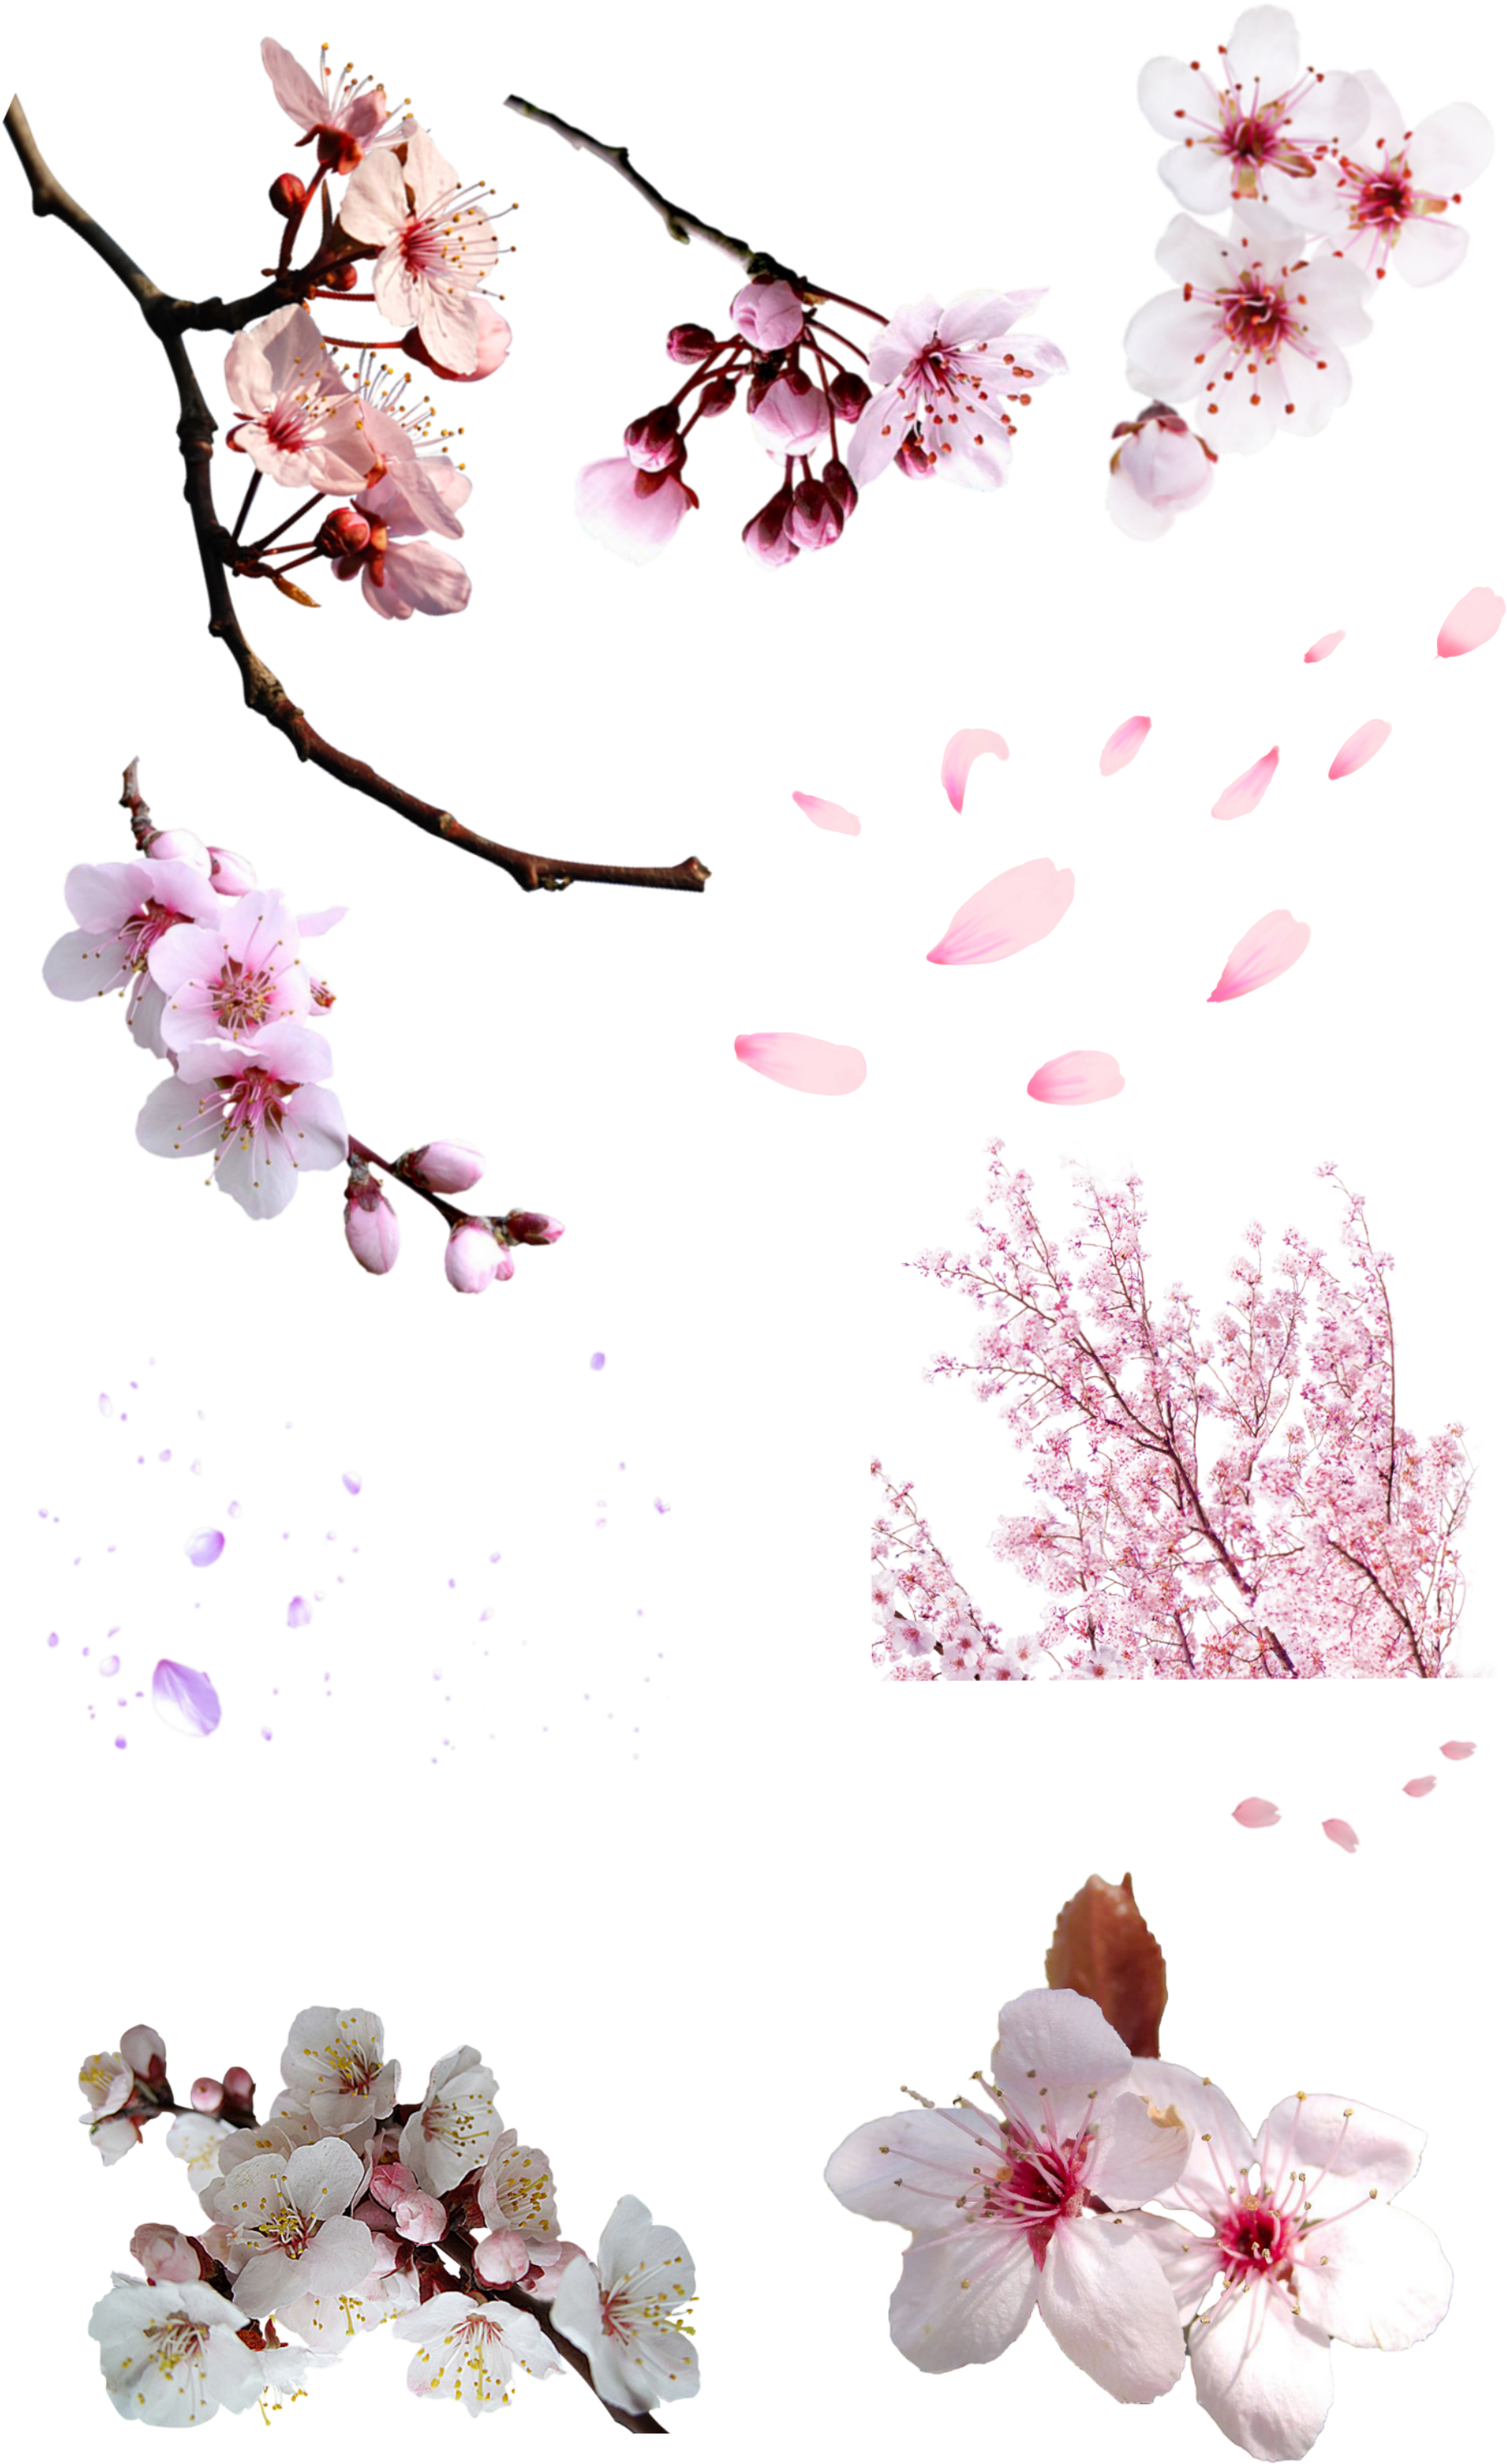 National Cherry Blossom Festival Cerasus Flower - National Cherry Blossom Festival Cerasus Flower (2000x3128)